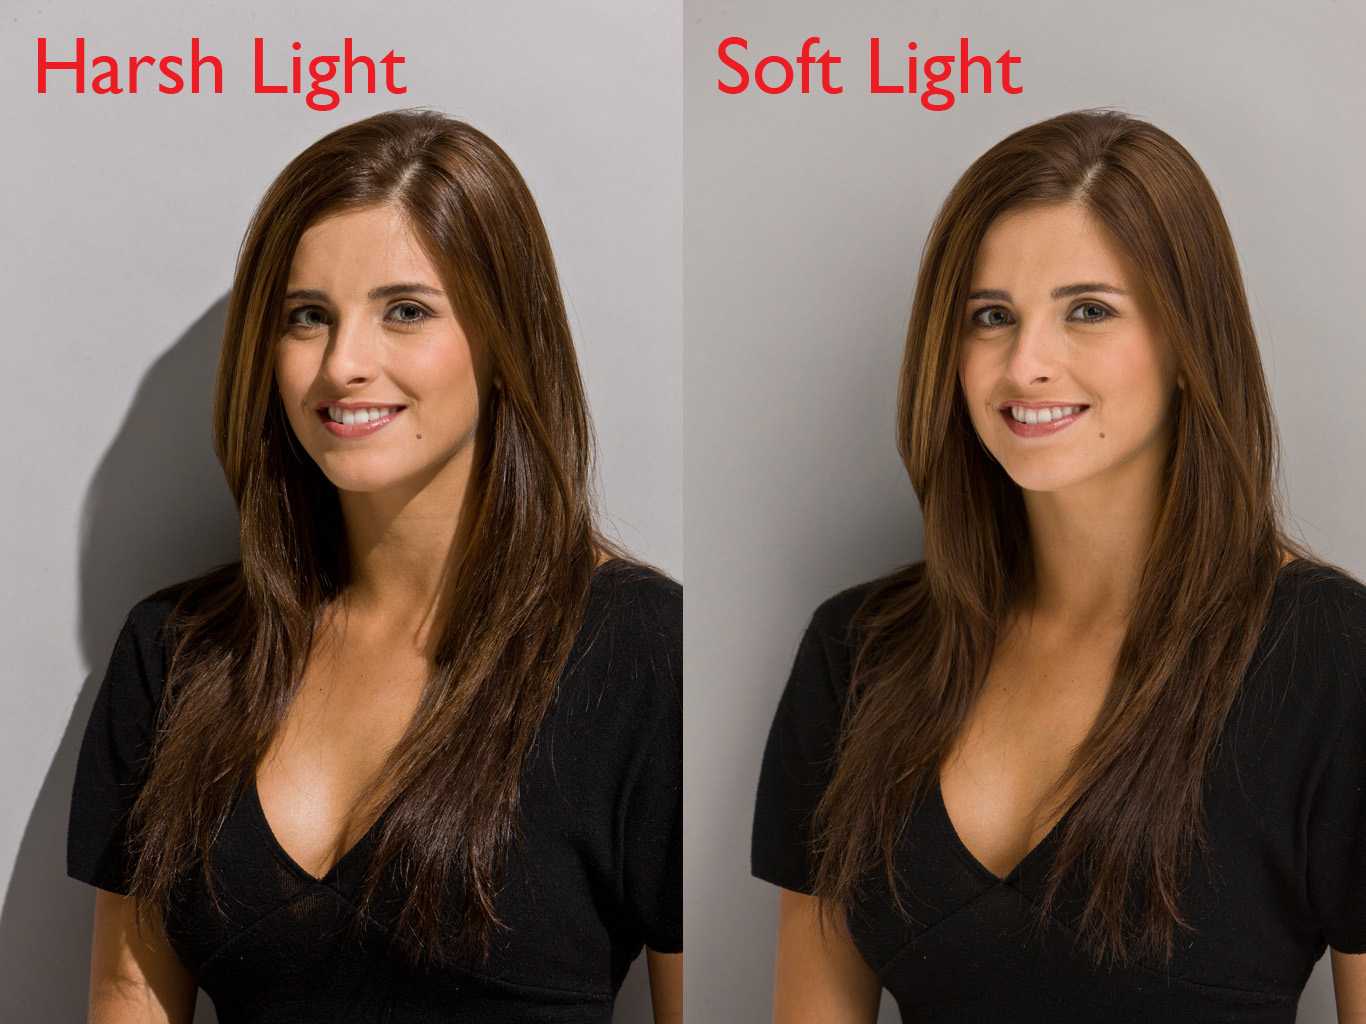 3 варианта освещения для съемки видео - как правильно выставить, схемы света в домашних условиях.